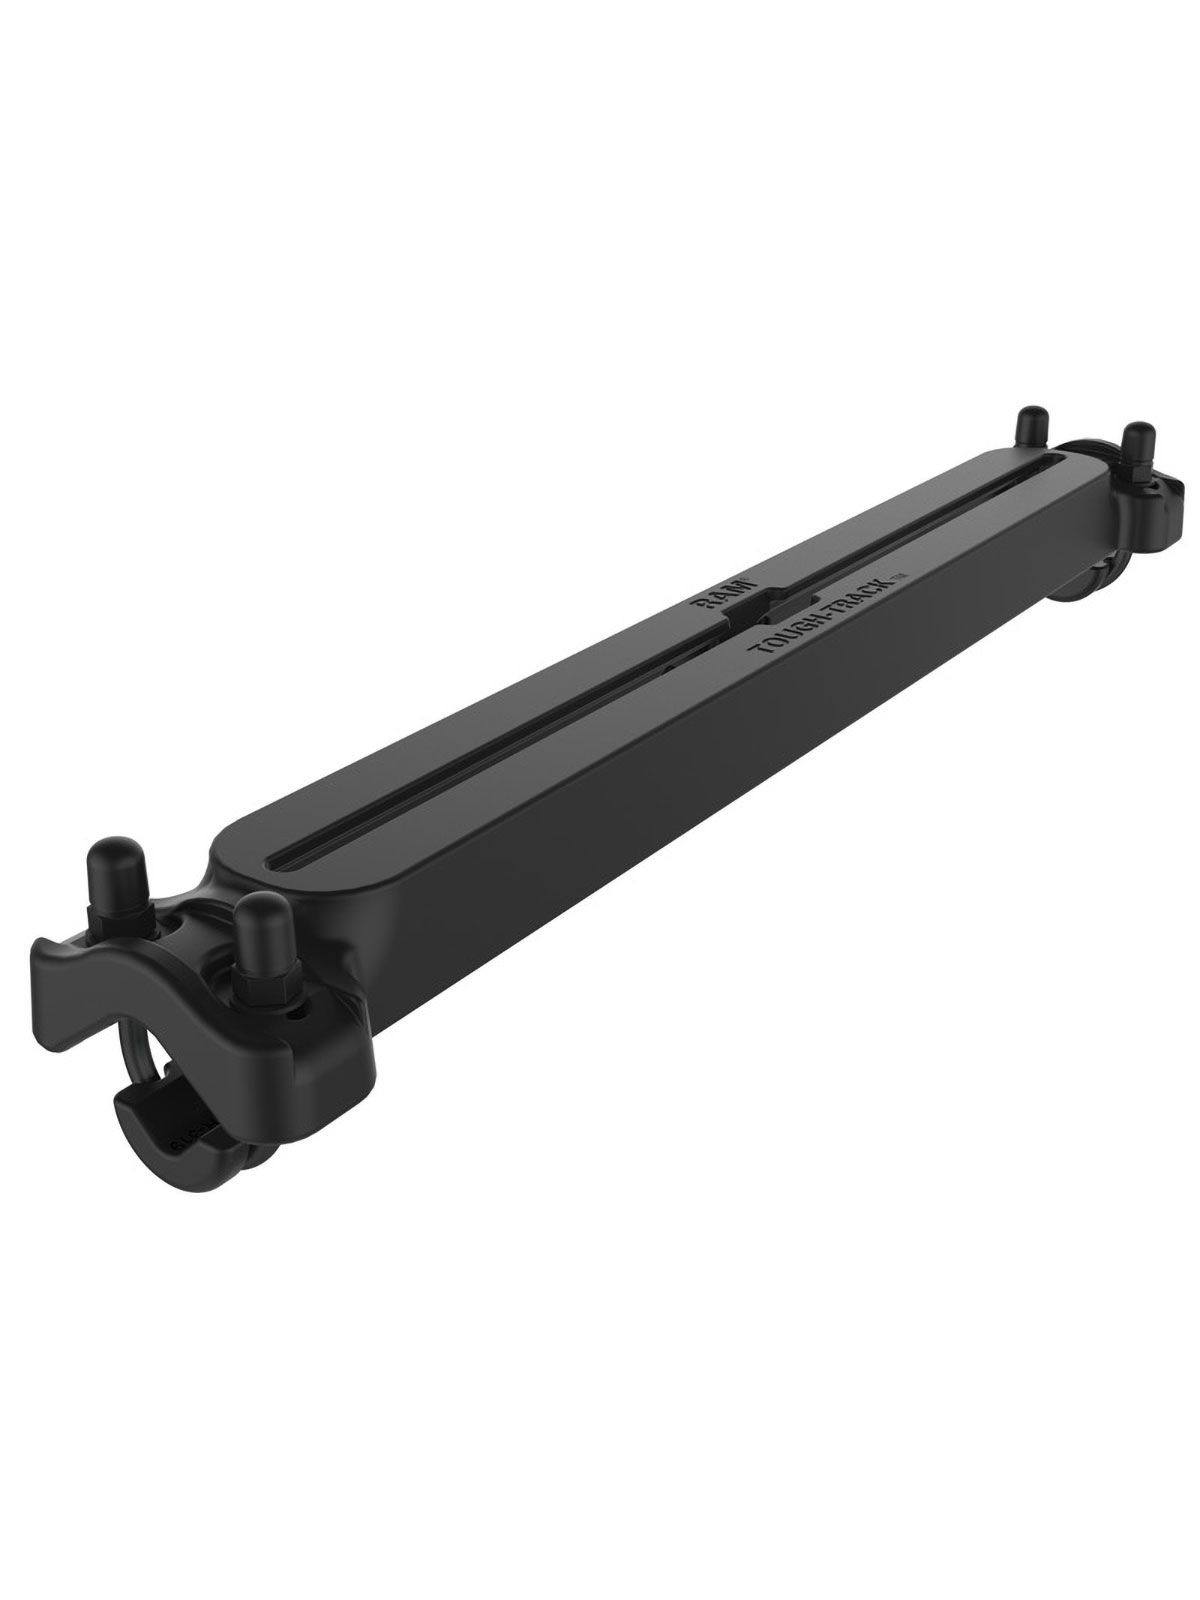 RAM Mounts Tough-Track Schiene für Rohr-Montage - 15,9-31,8 mm Durchmesser, 18 Zoll Schiene (457,2 mm)